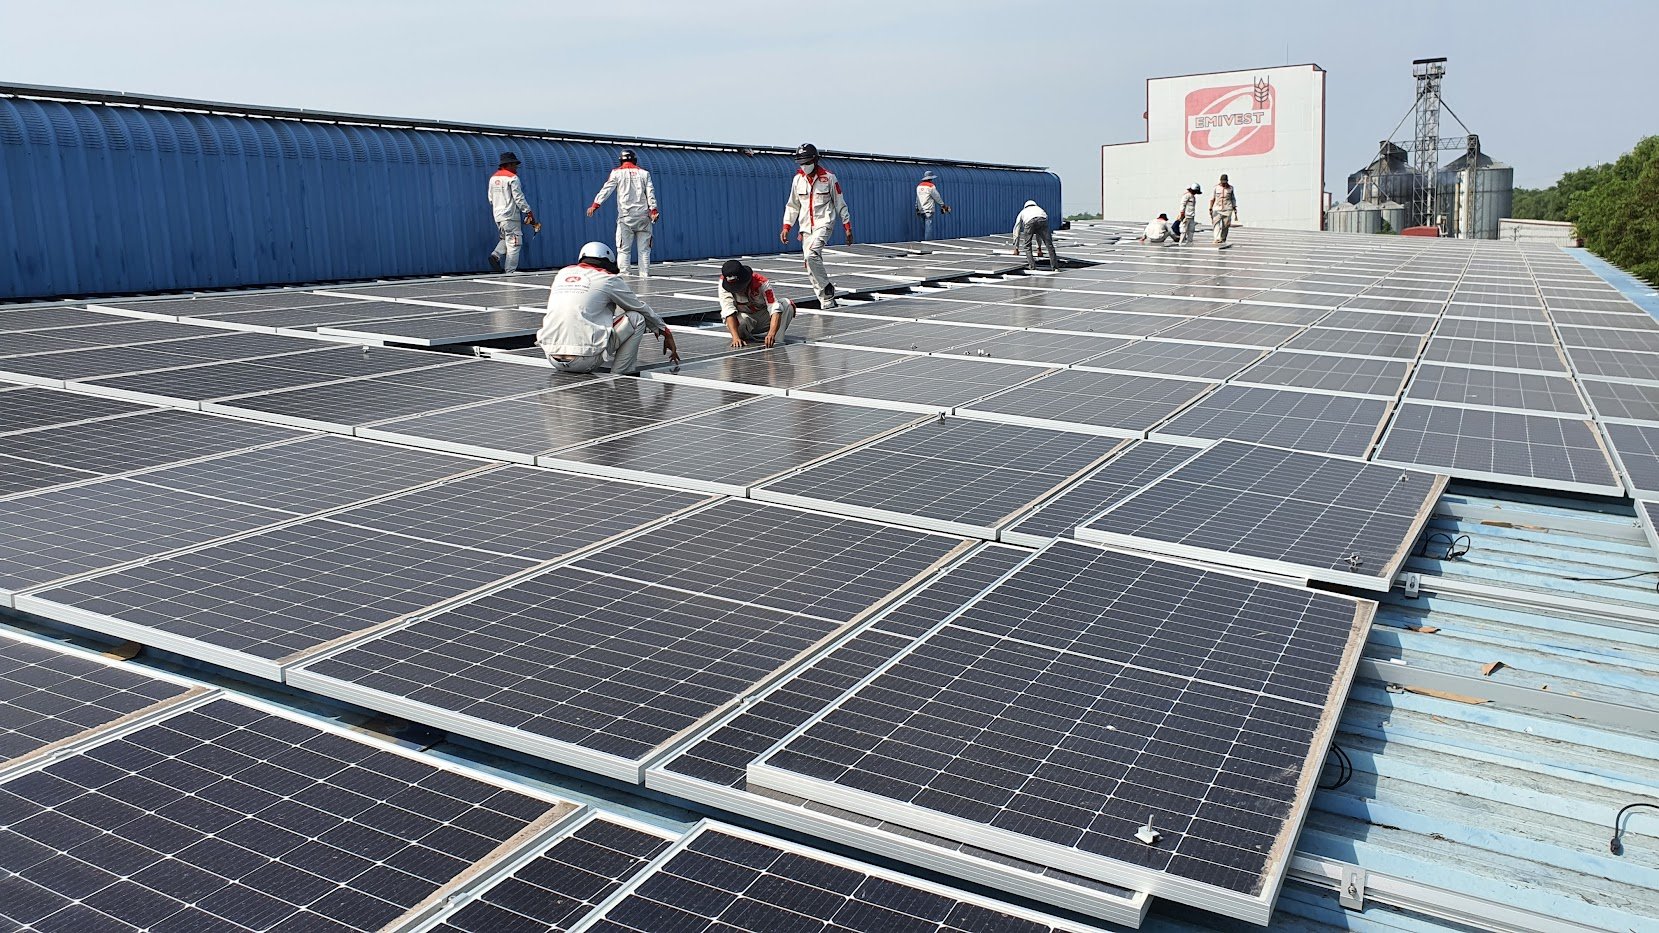 HỆ THỐNG ĐIỆN MẶT TRỜI HÒA LƯỚI 2MWp - Dự án sử dụng 4.496 tấm pin năng lượng mặt trời ANTARIS GERMANY - MONO 445Wp hiệu suất cao